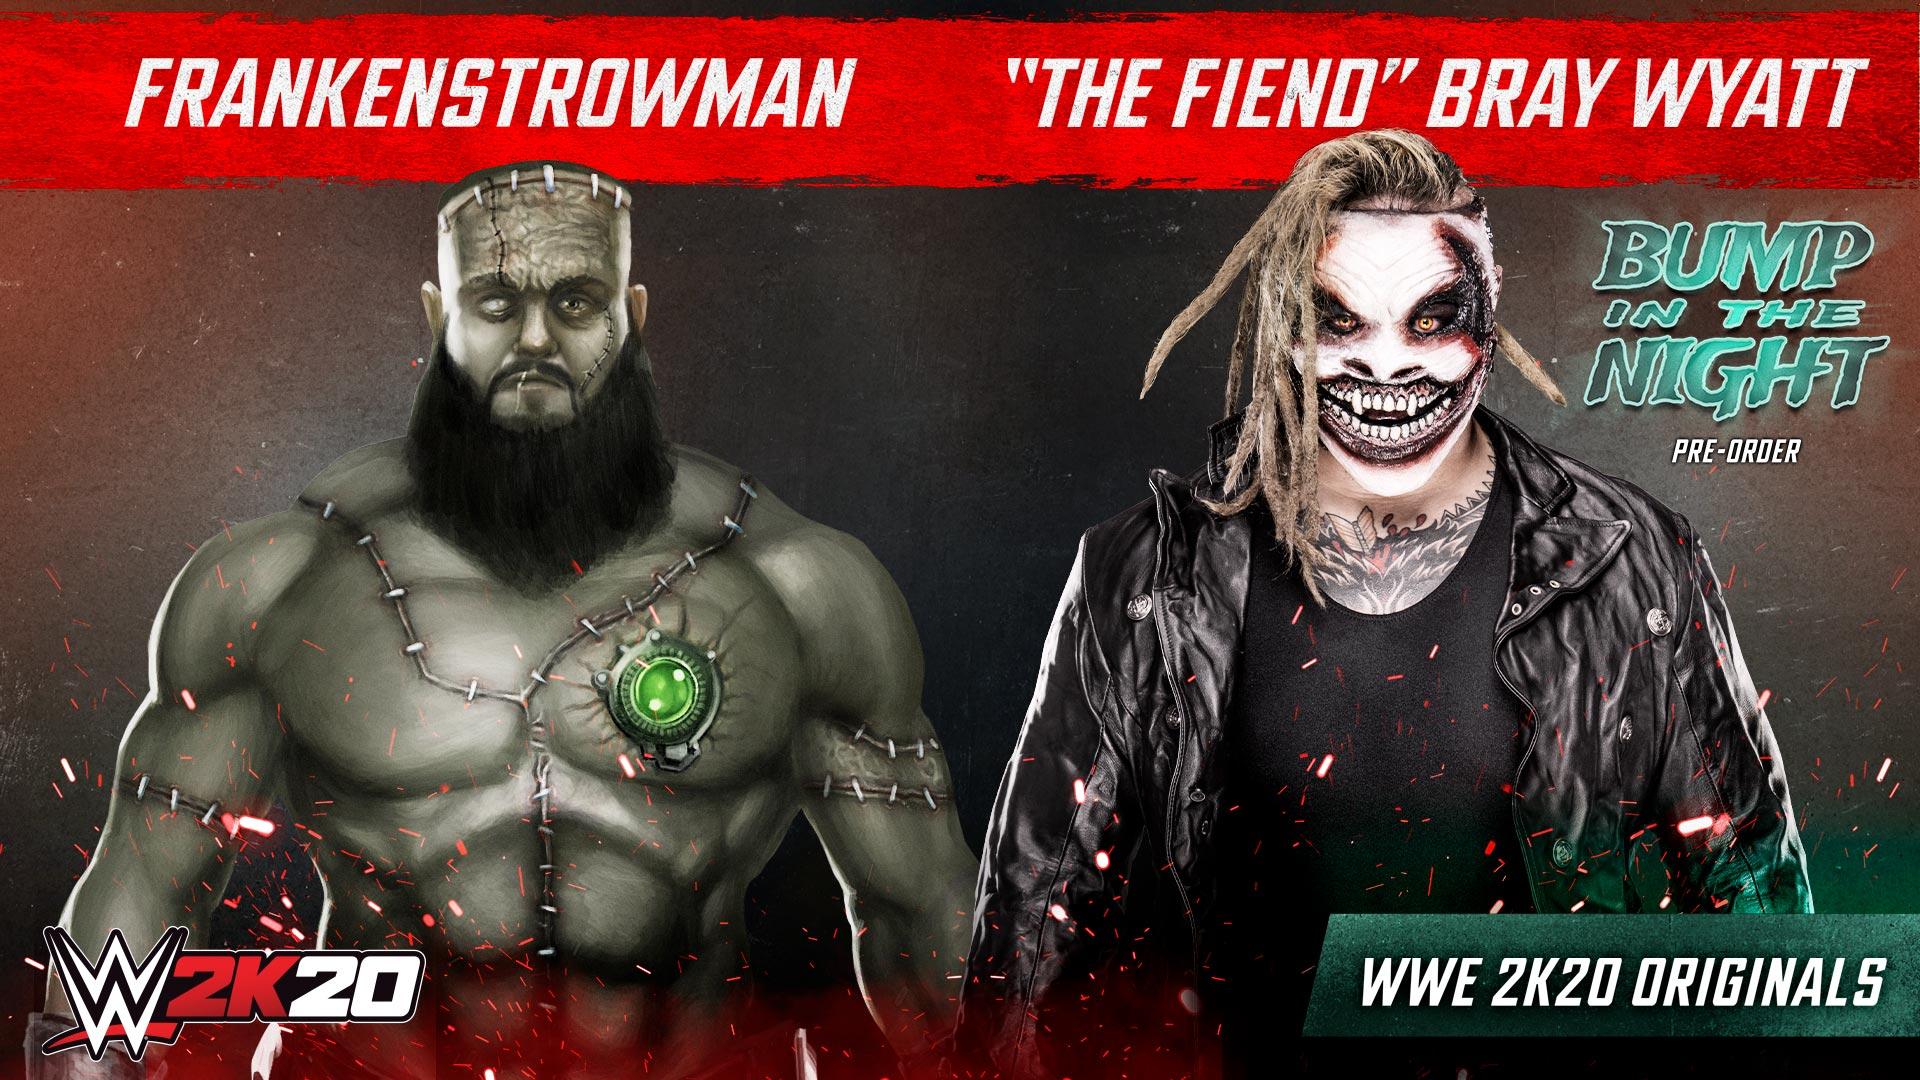 The Fiend” Bray Wyatt Headlines First WWE 2K20 Originals